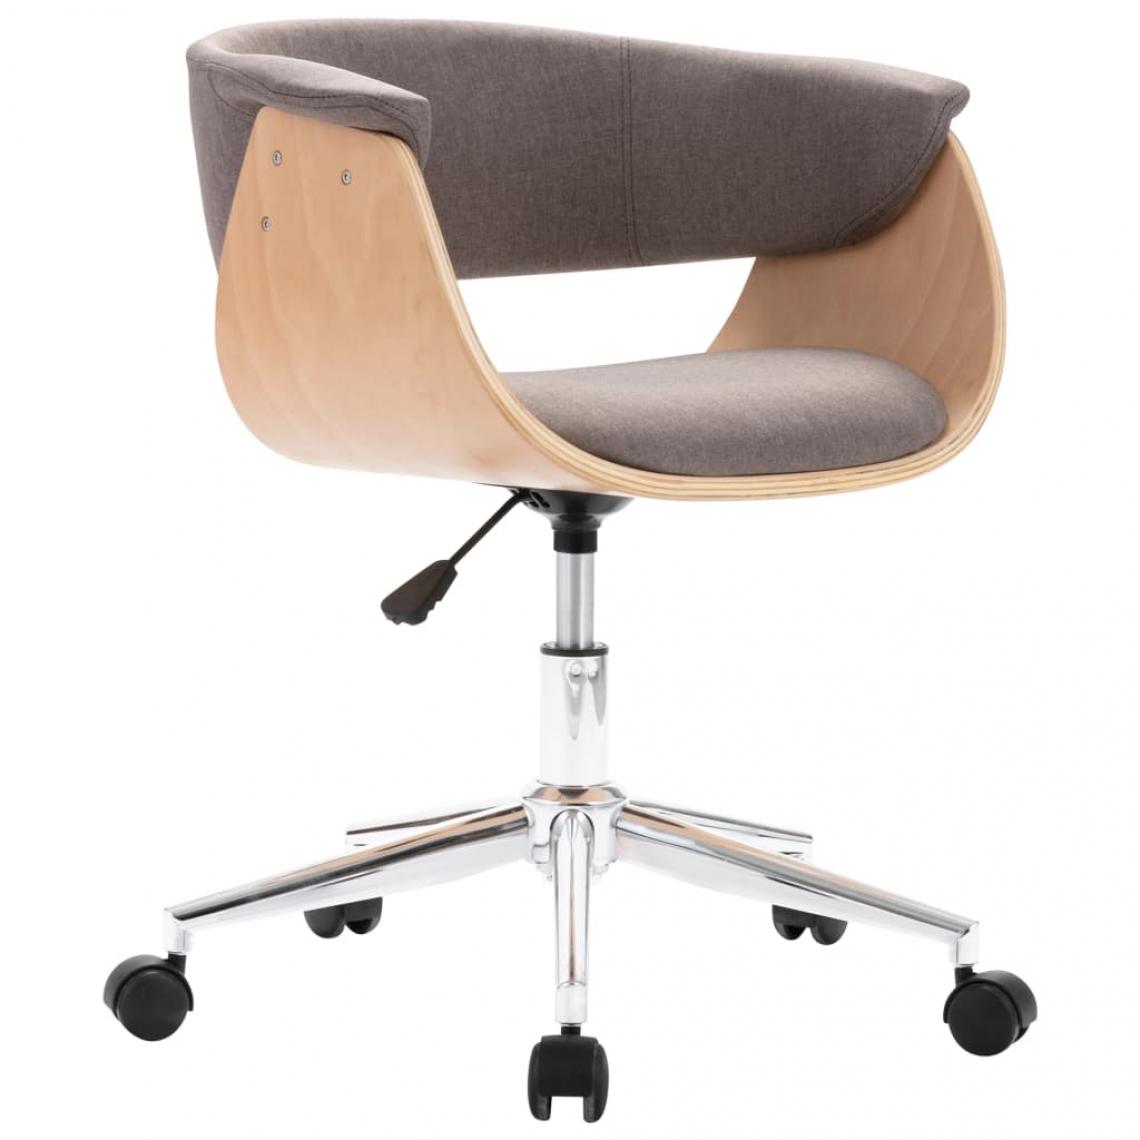 Decoshop26 - Chaise pivotante de salle à manger design contemporain bois courbé et tissu taupe CDS020101 - Chaises